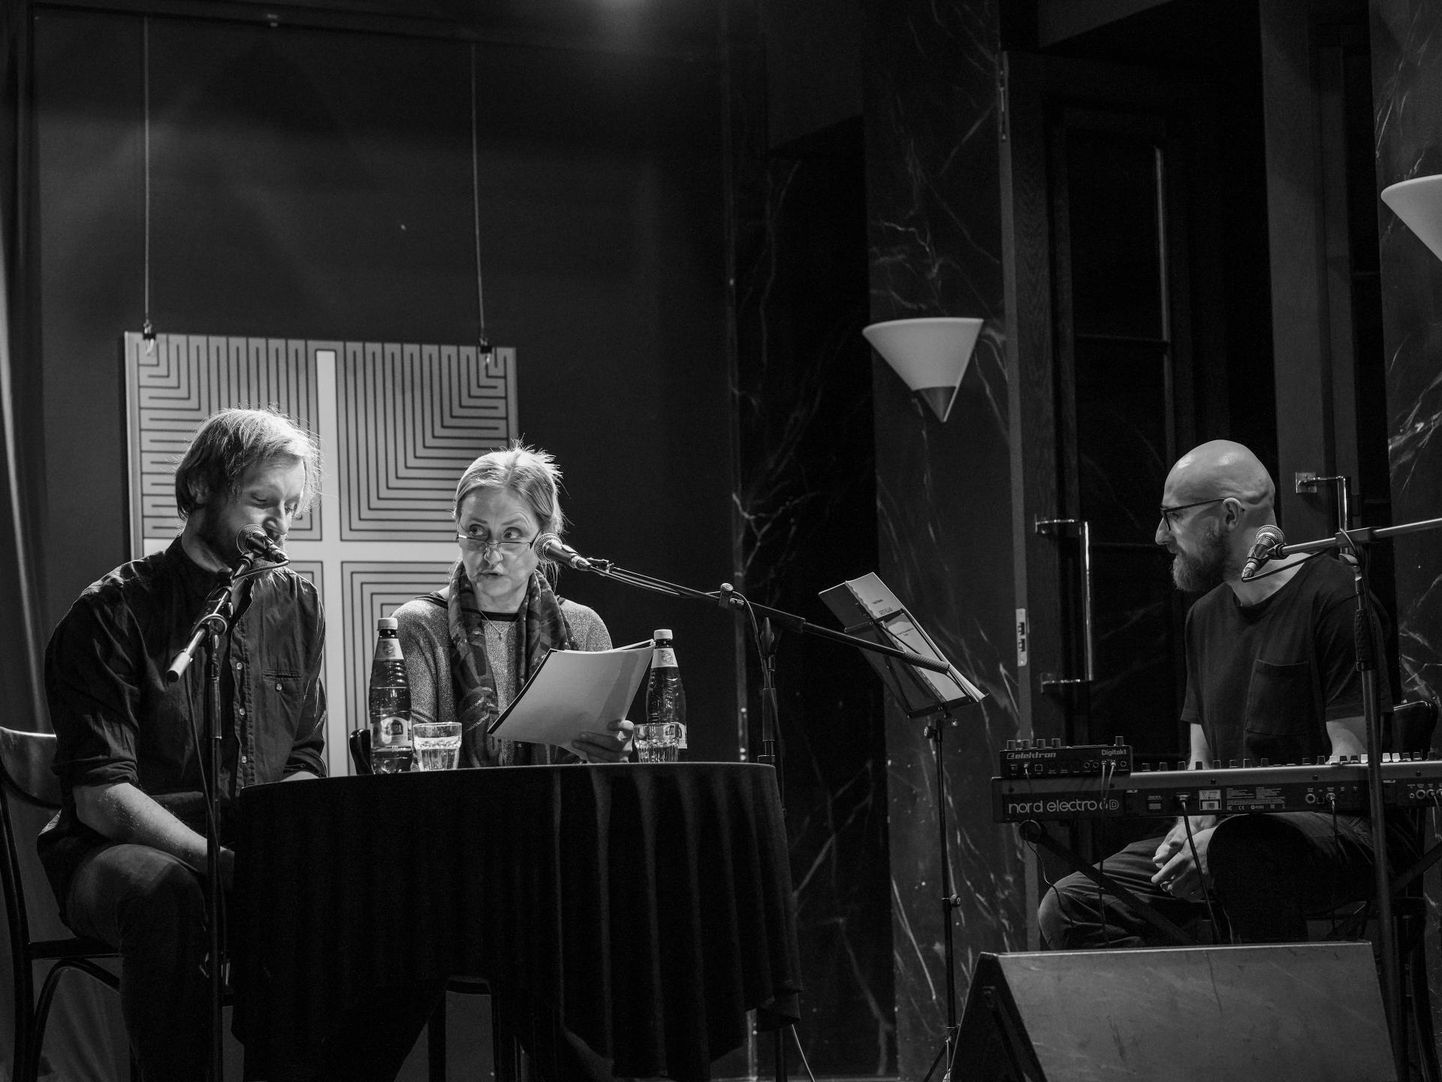 Näidendi «Keti viljad» lugesid ette Madis Mäeorg ja Eili Neuhaus, autor Vootele Ruusmaa sättis helitausta.